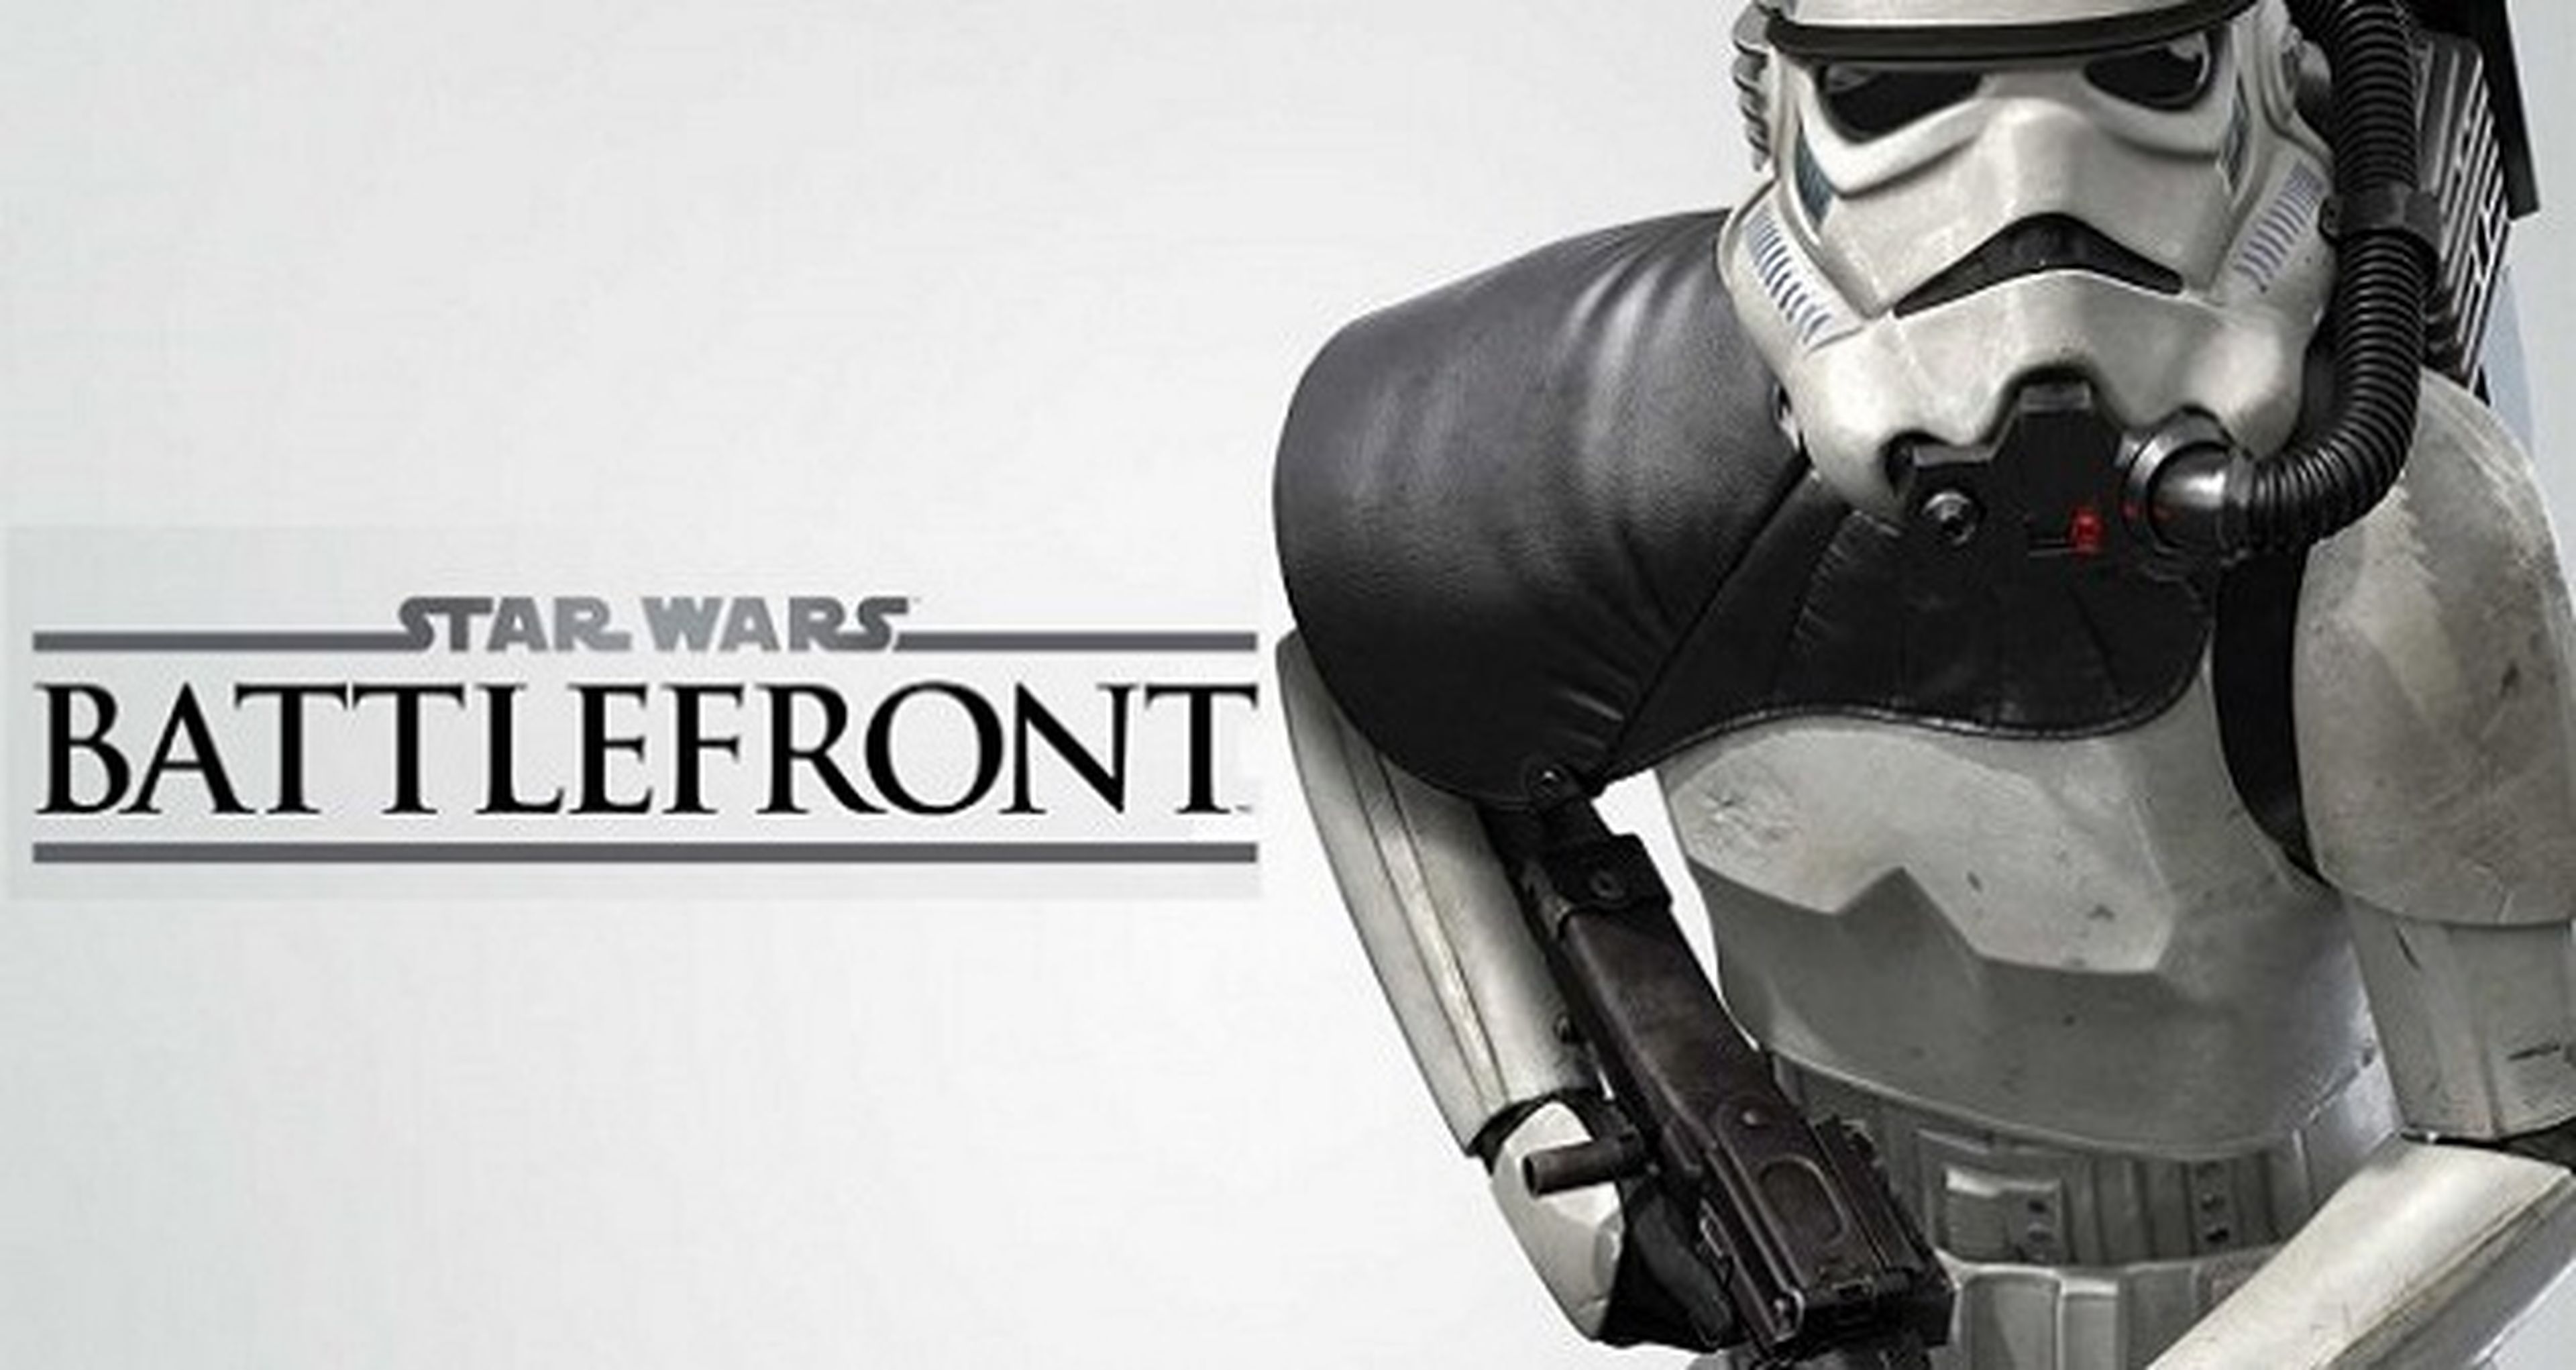 Star Wars Battlefront no guarda contenido para sus DLCs